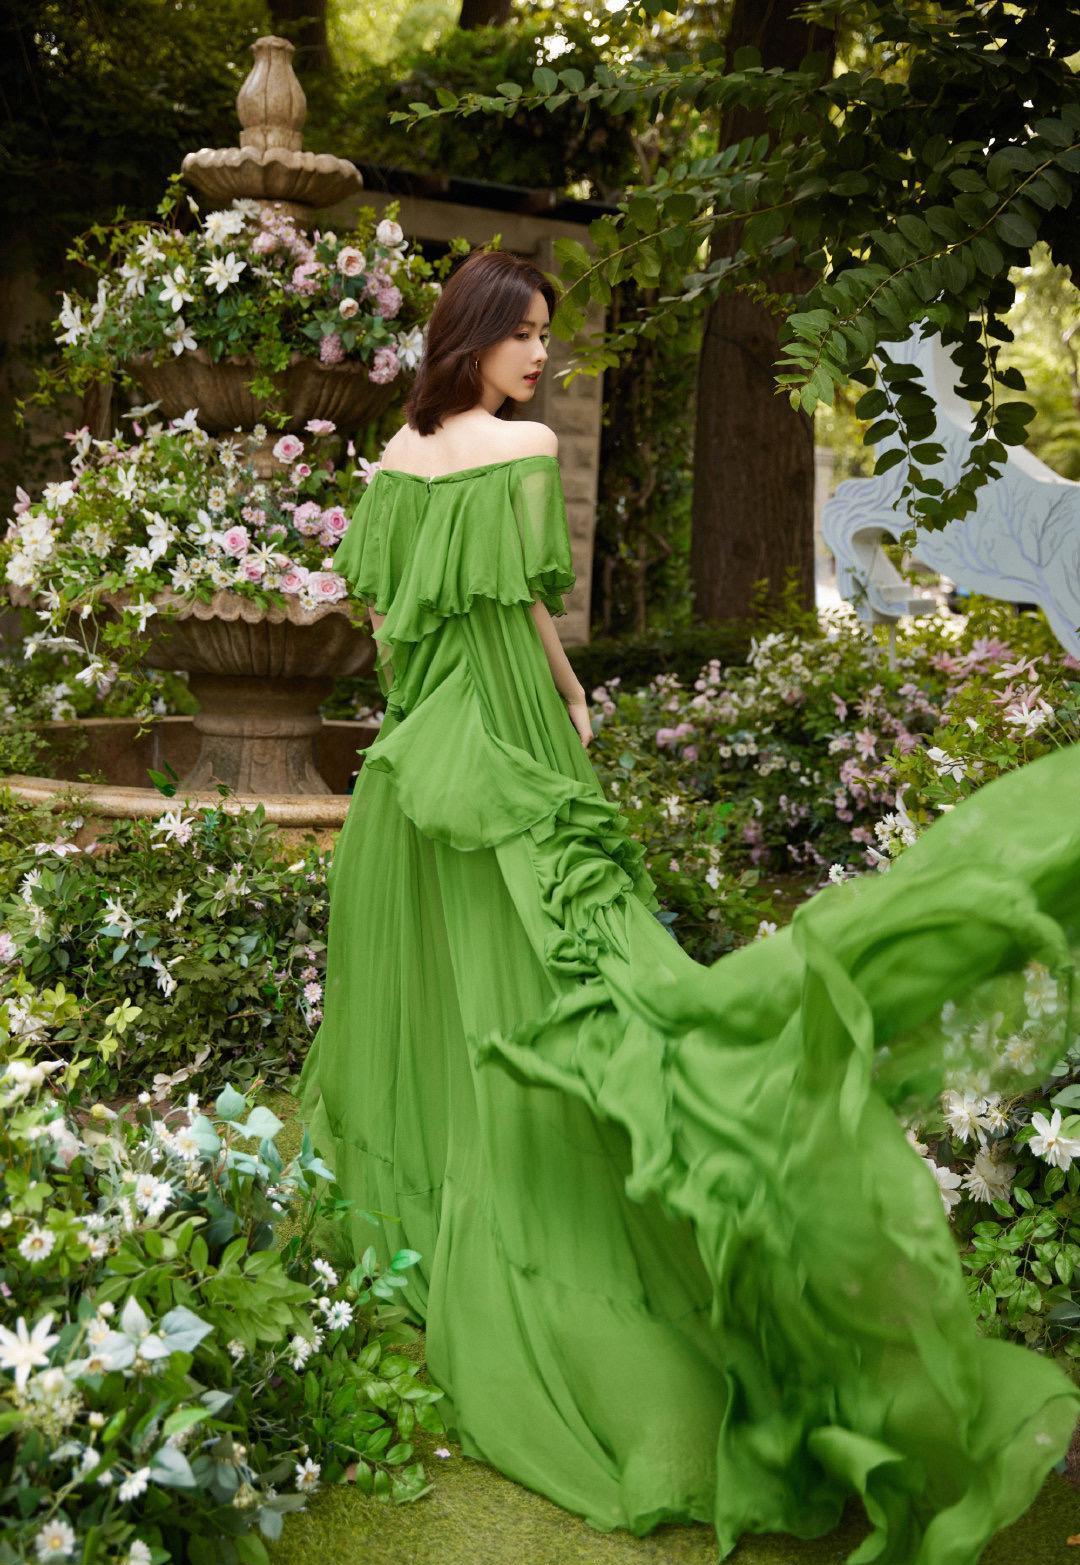 绿色的轻纱面料,让这款裙子垂感十足,充满着女性的温婉和柔美